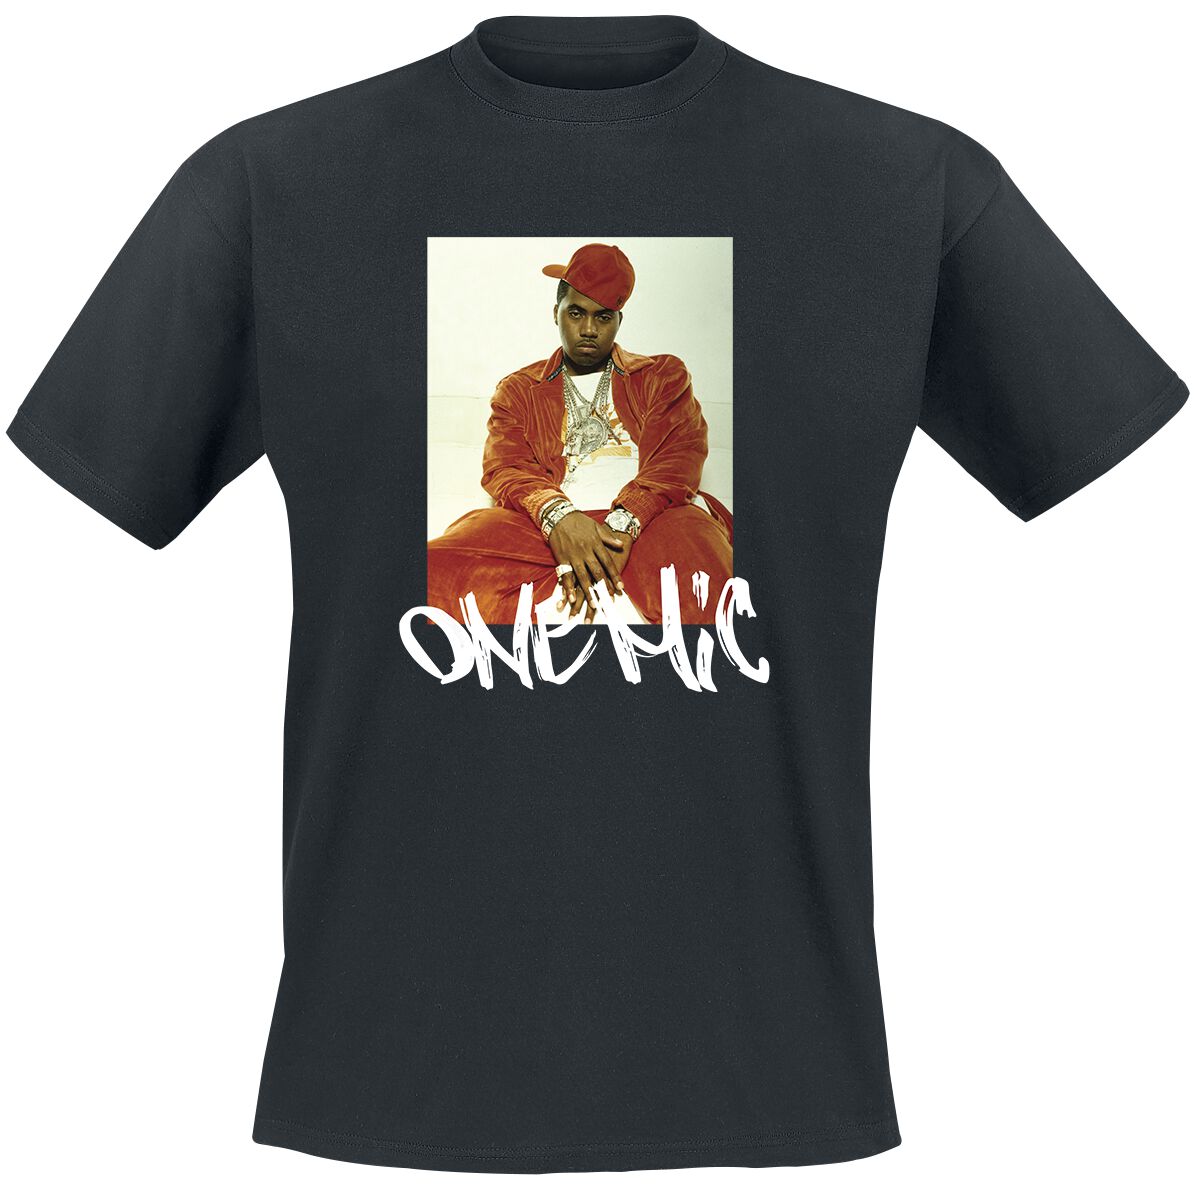 Nas T-Shirt - Stillmatic One Mic - S bis 3XL - für Männer - Größe S - schwarz  - Lizenziertes Merchandise!